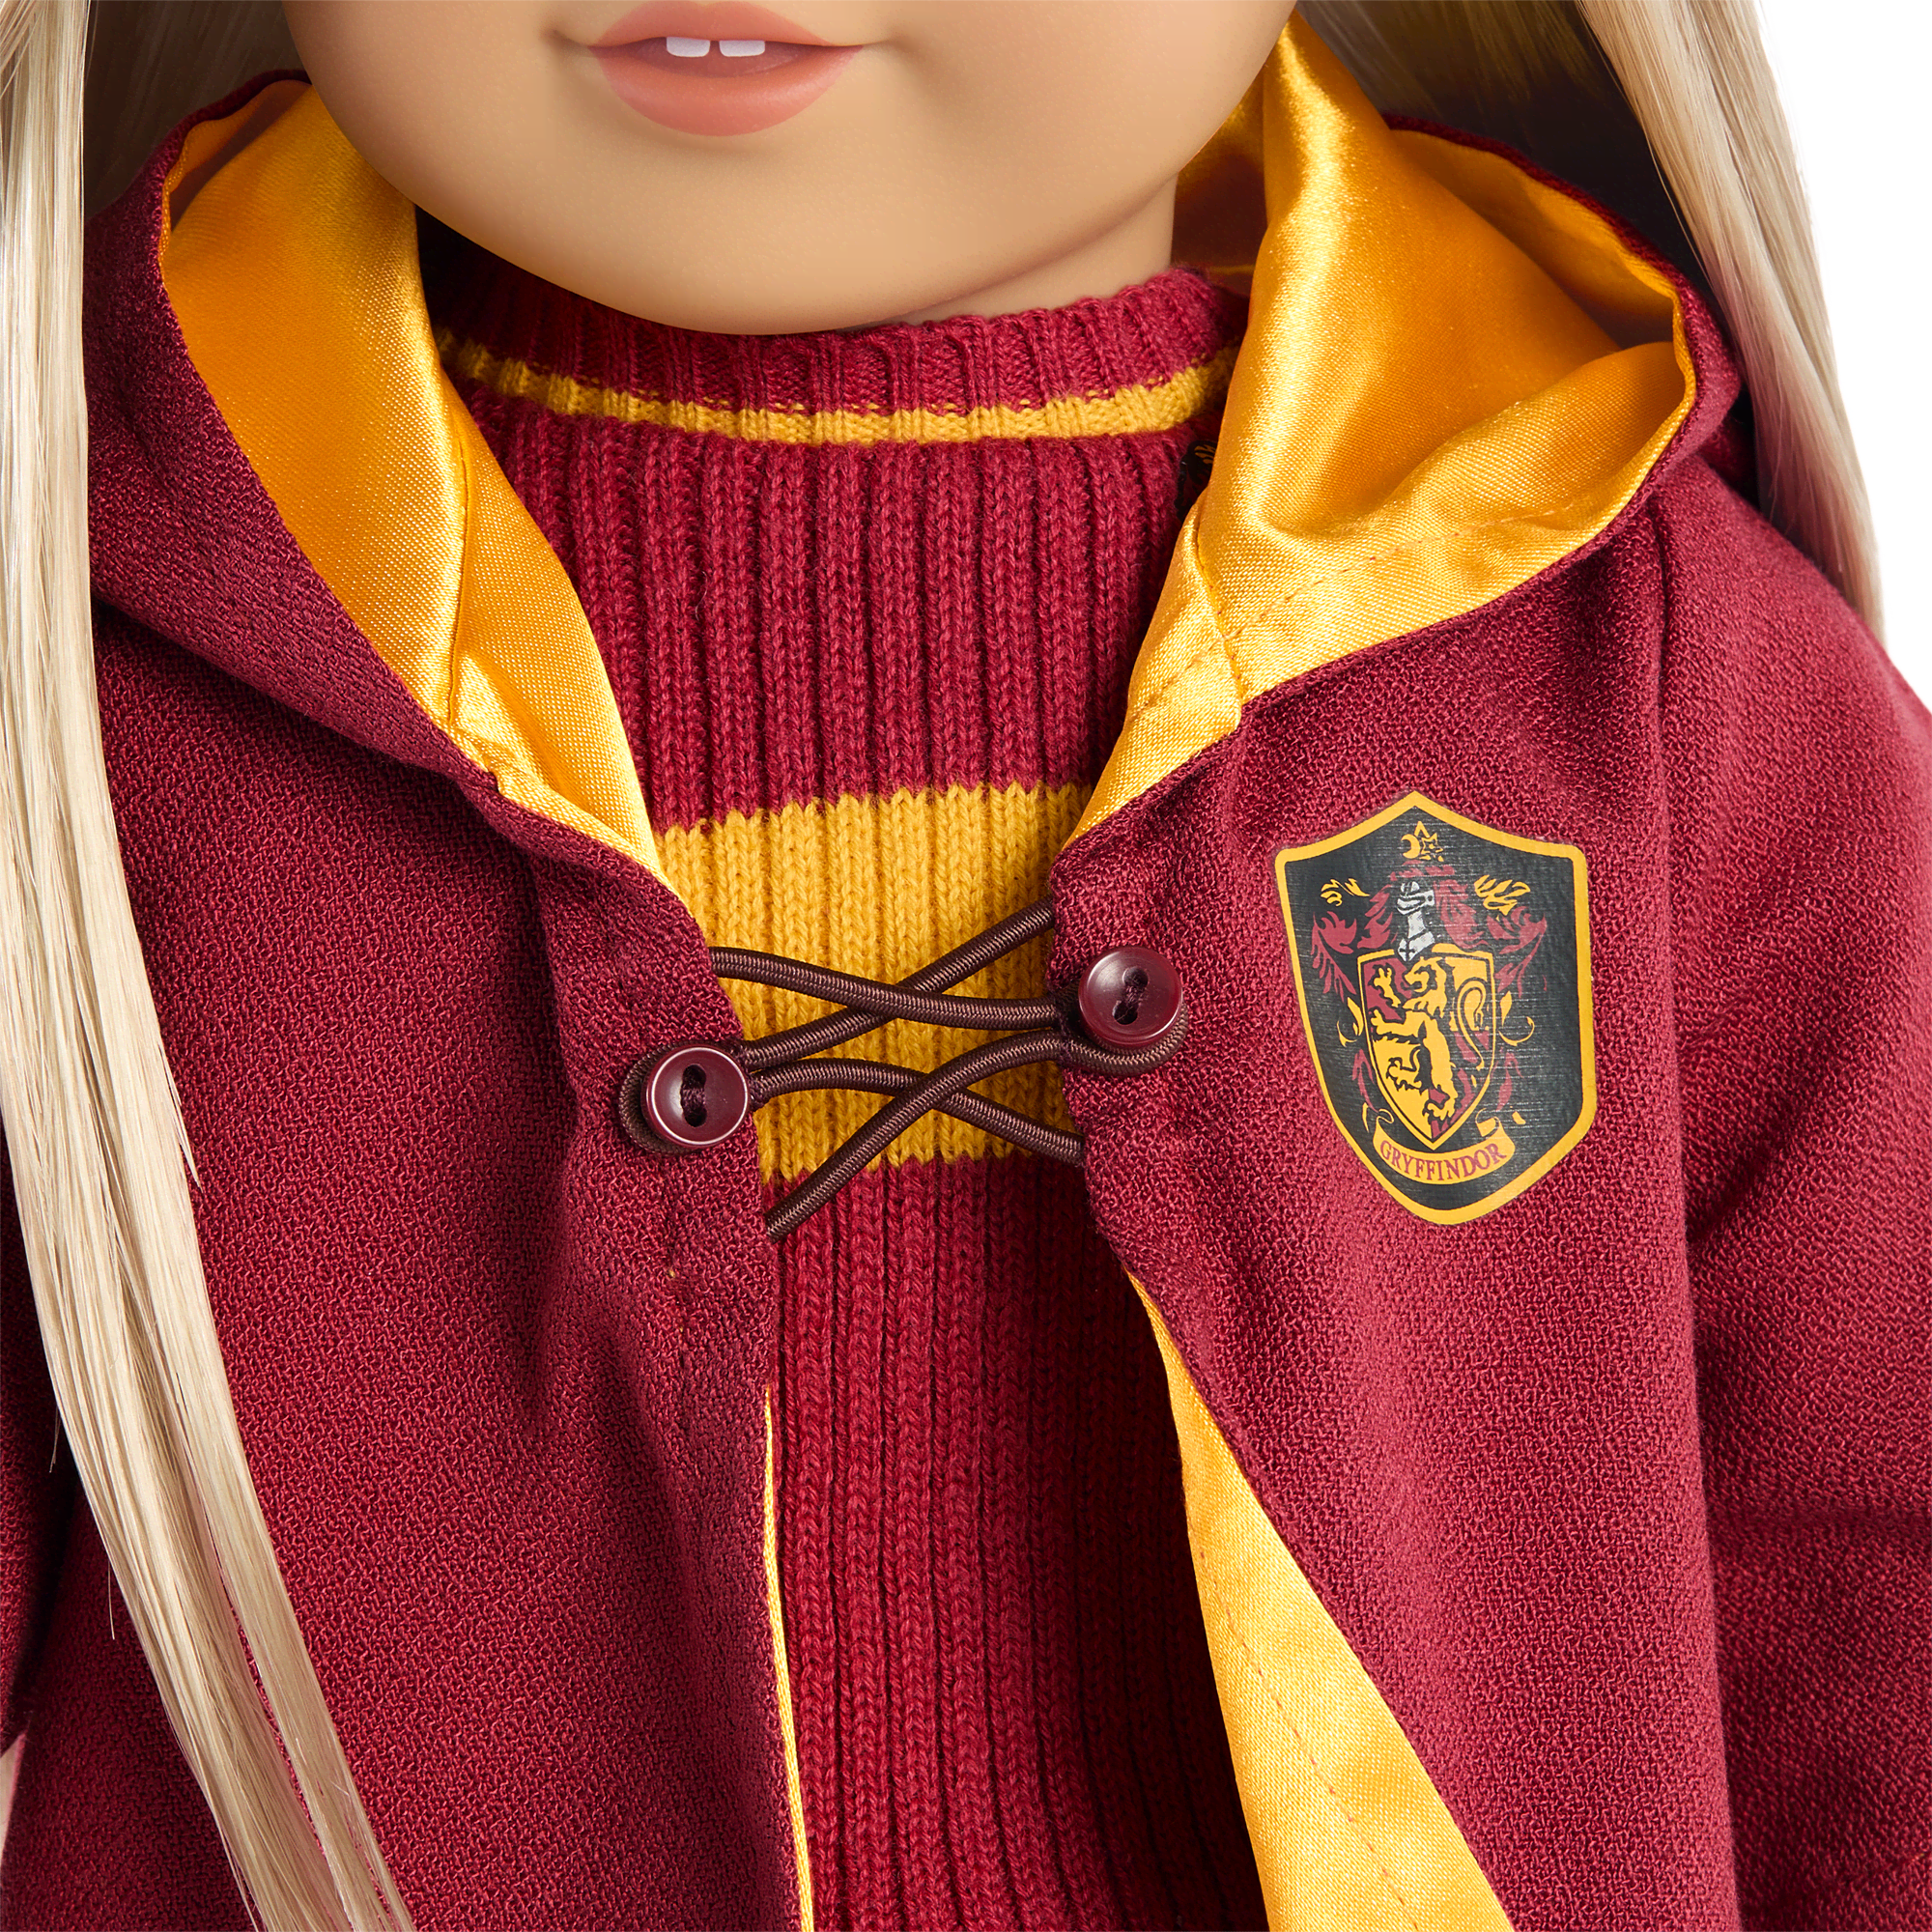 American Girl® Gryffindor™ Quidditch™ Uniform for 18-inch Dolls